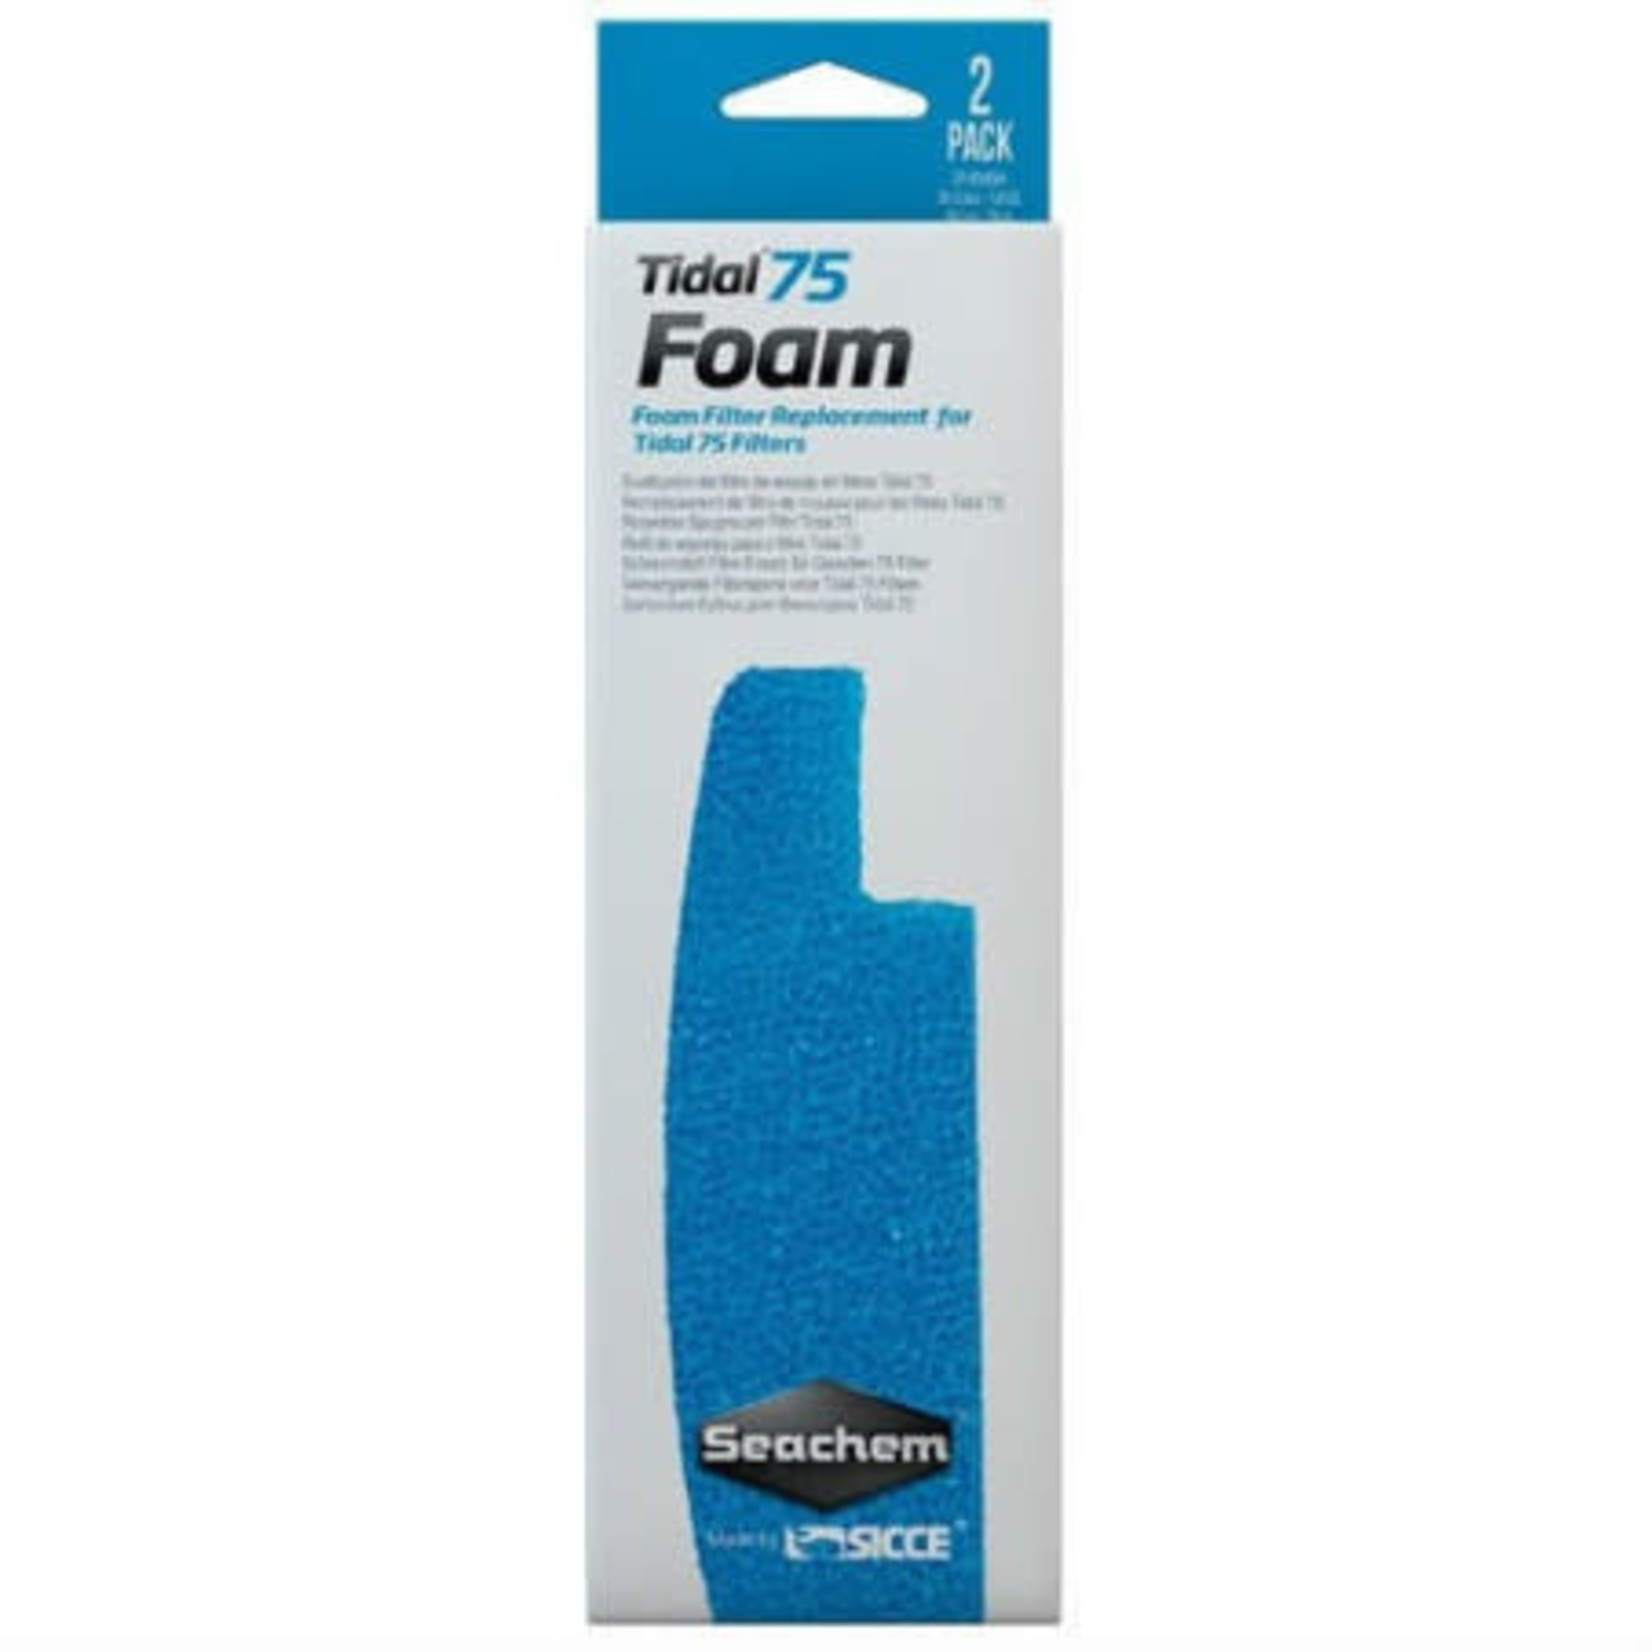 Seachem Seachem Tidal 75 Foam Filter Sponges for Tidal 75 External Filter - 2 Pack